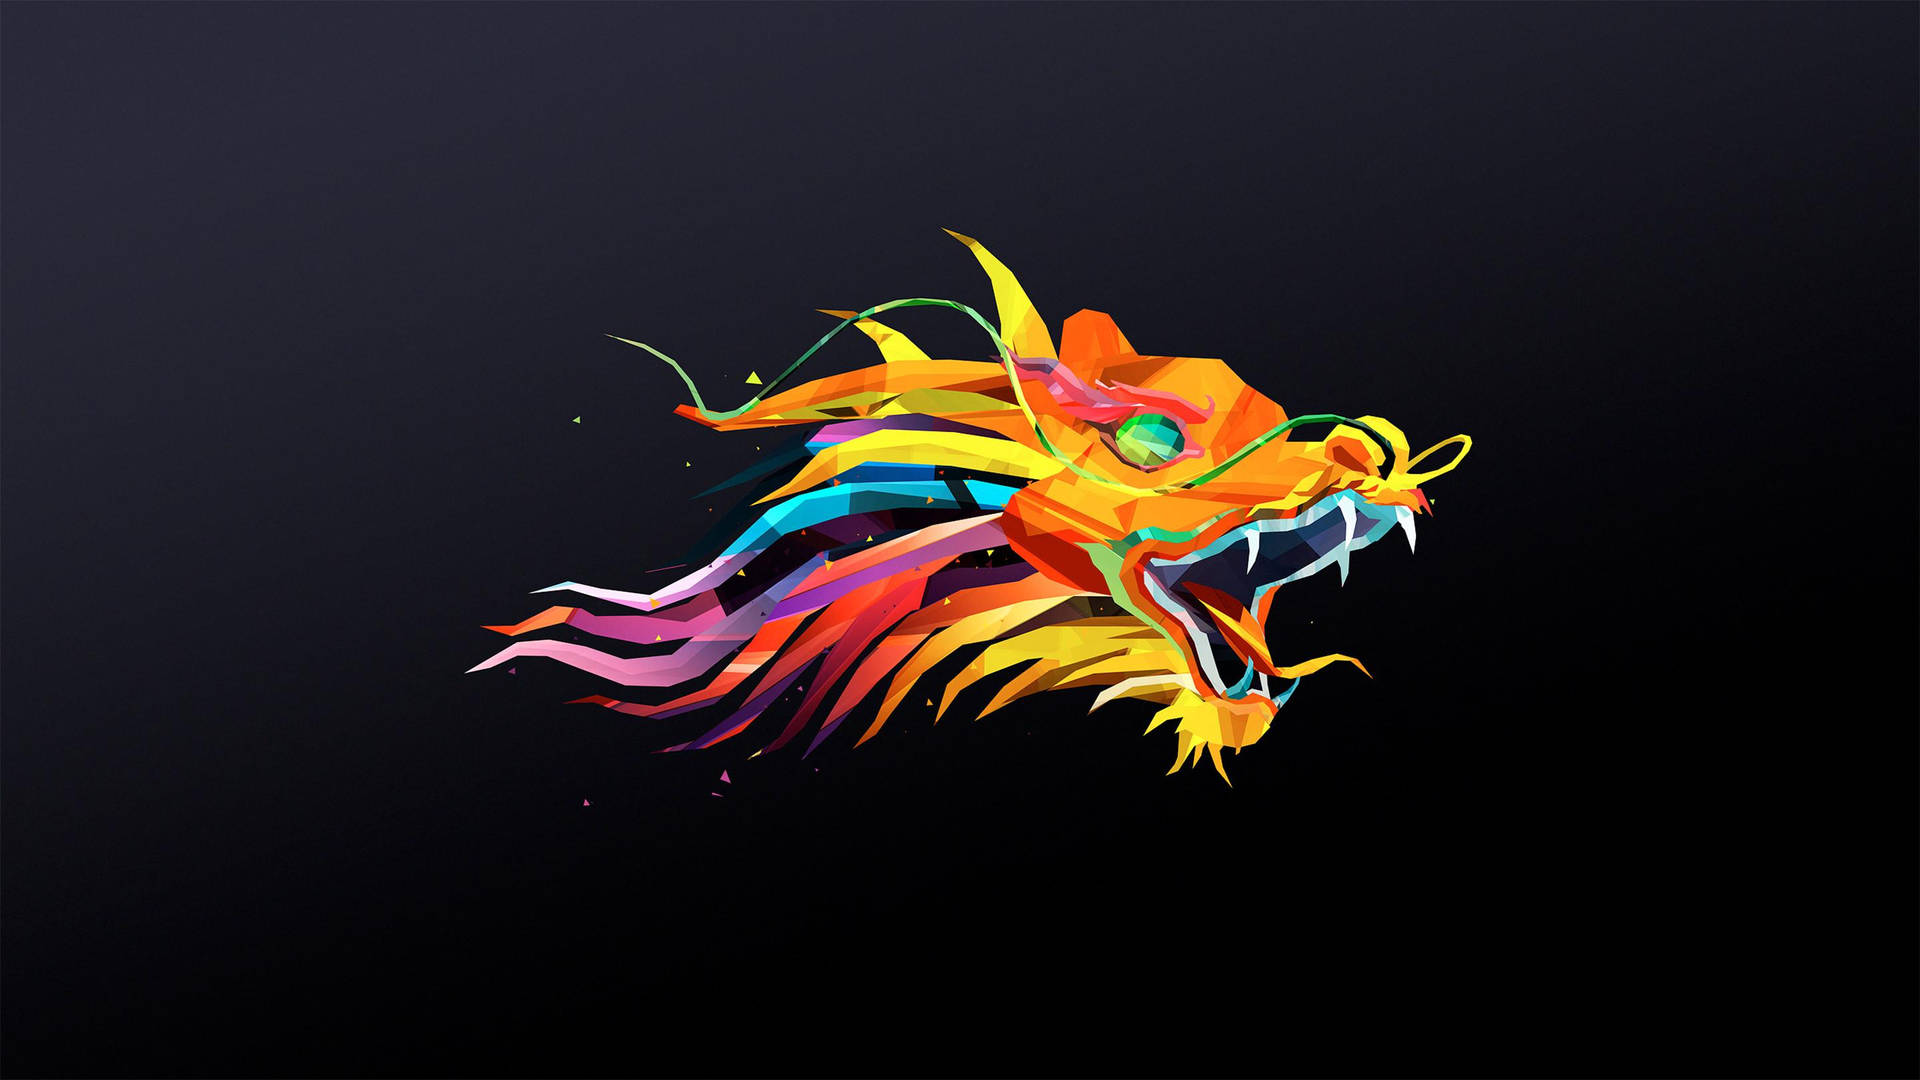 Brightly colored Dragon Design Wallpaper